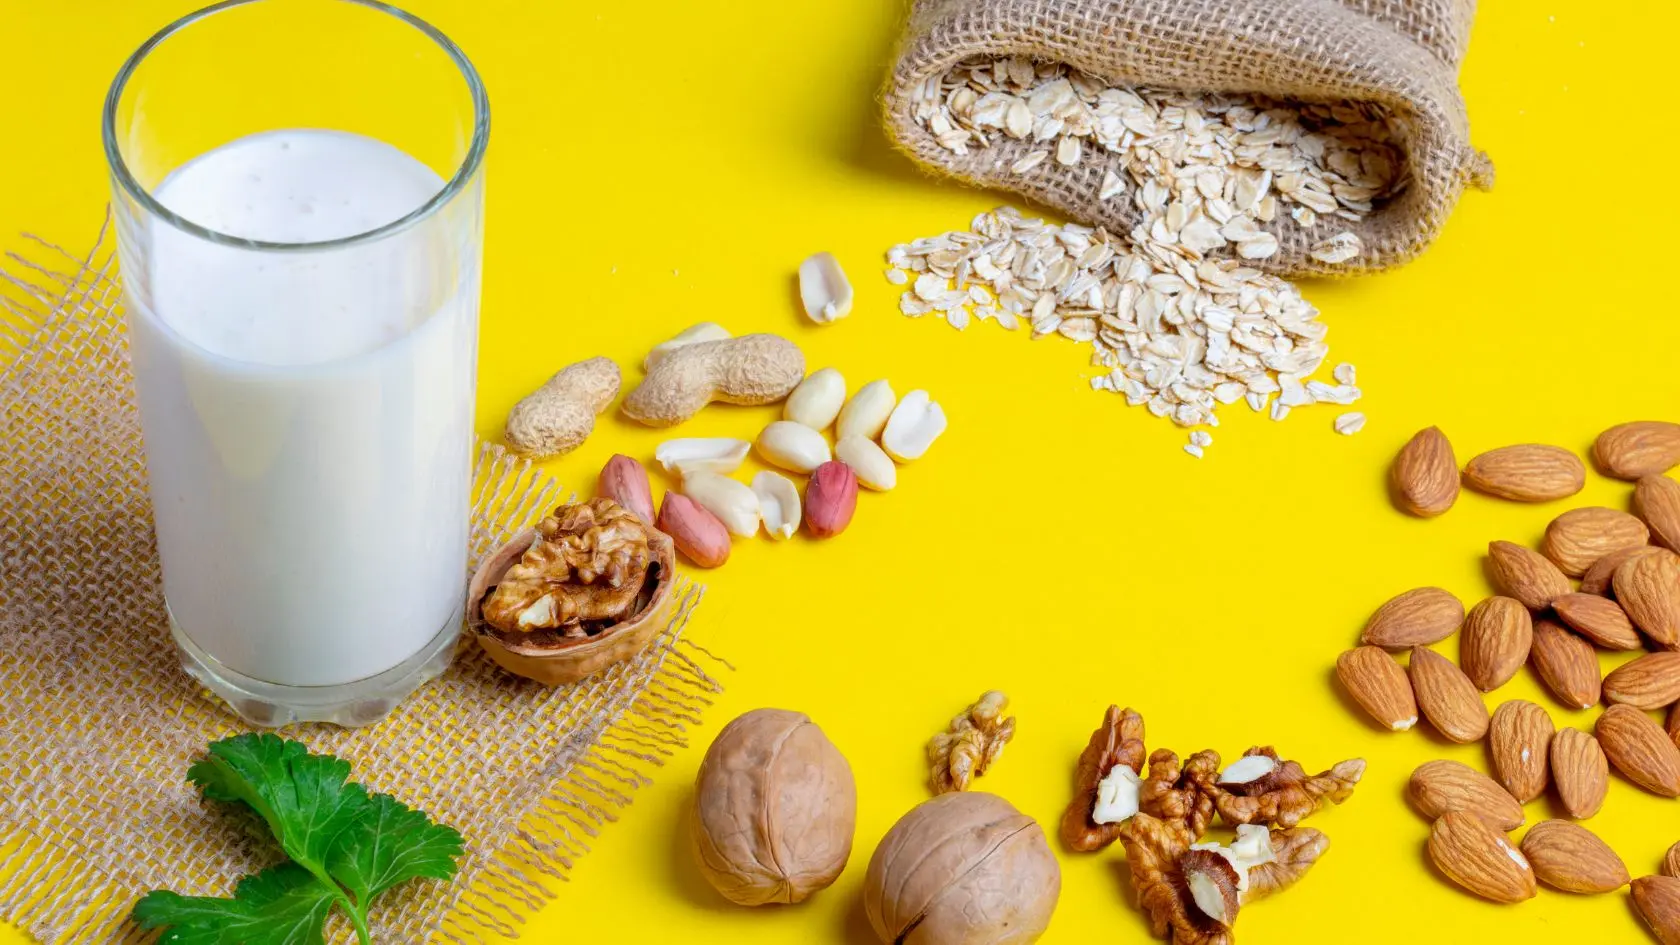 Sữa hạt không chứa lactozo và cholesterol xấu